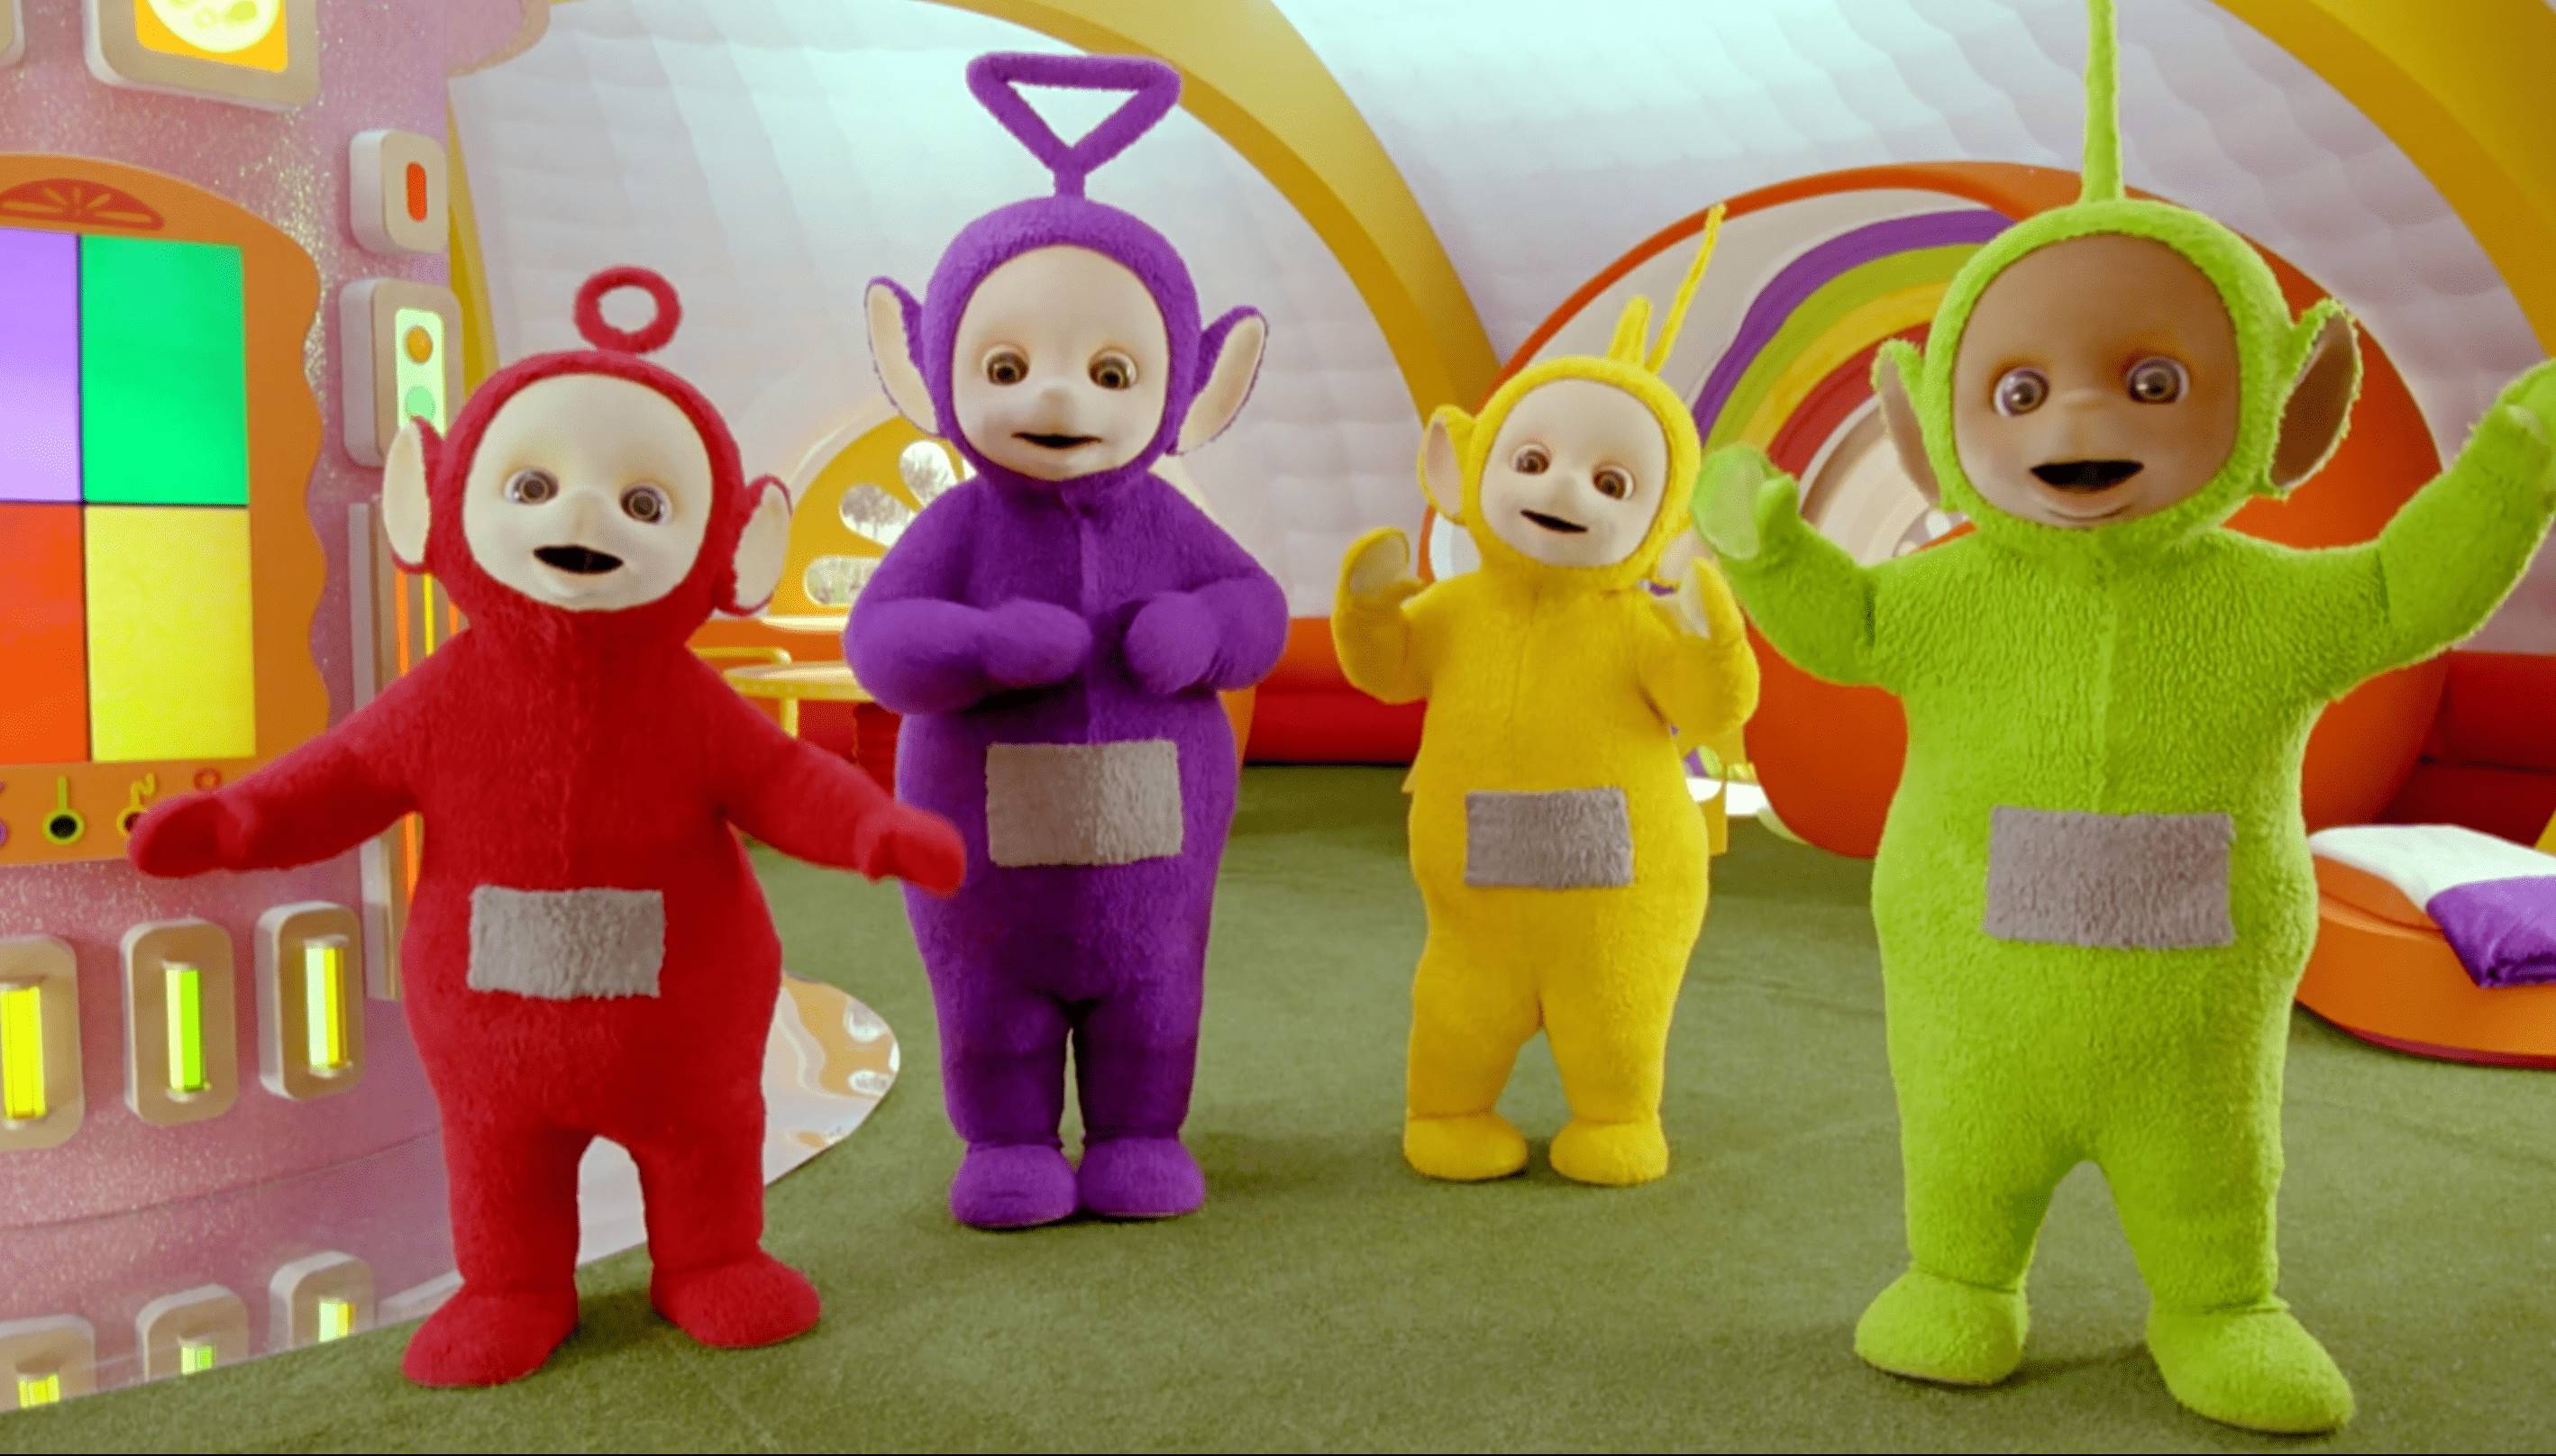 近日《天線寶寶》全新系列作品宣布將在Netflix上架並公開最新預告片，但網友們發現劇中經典角色「小太陽寶寶」竟不是熟悉的面孔，意外掀起網友熱議。